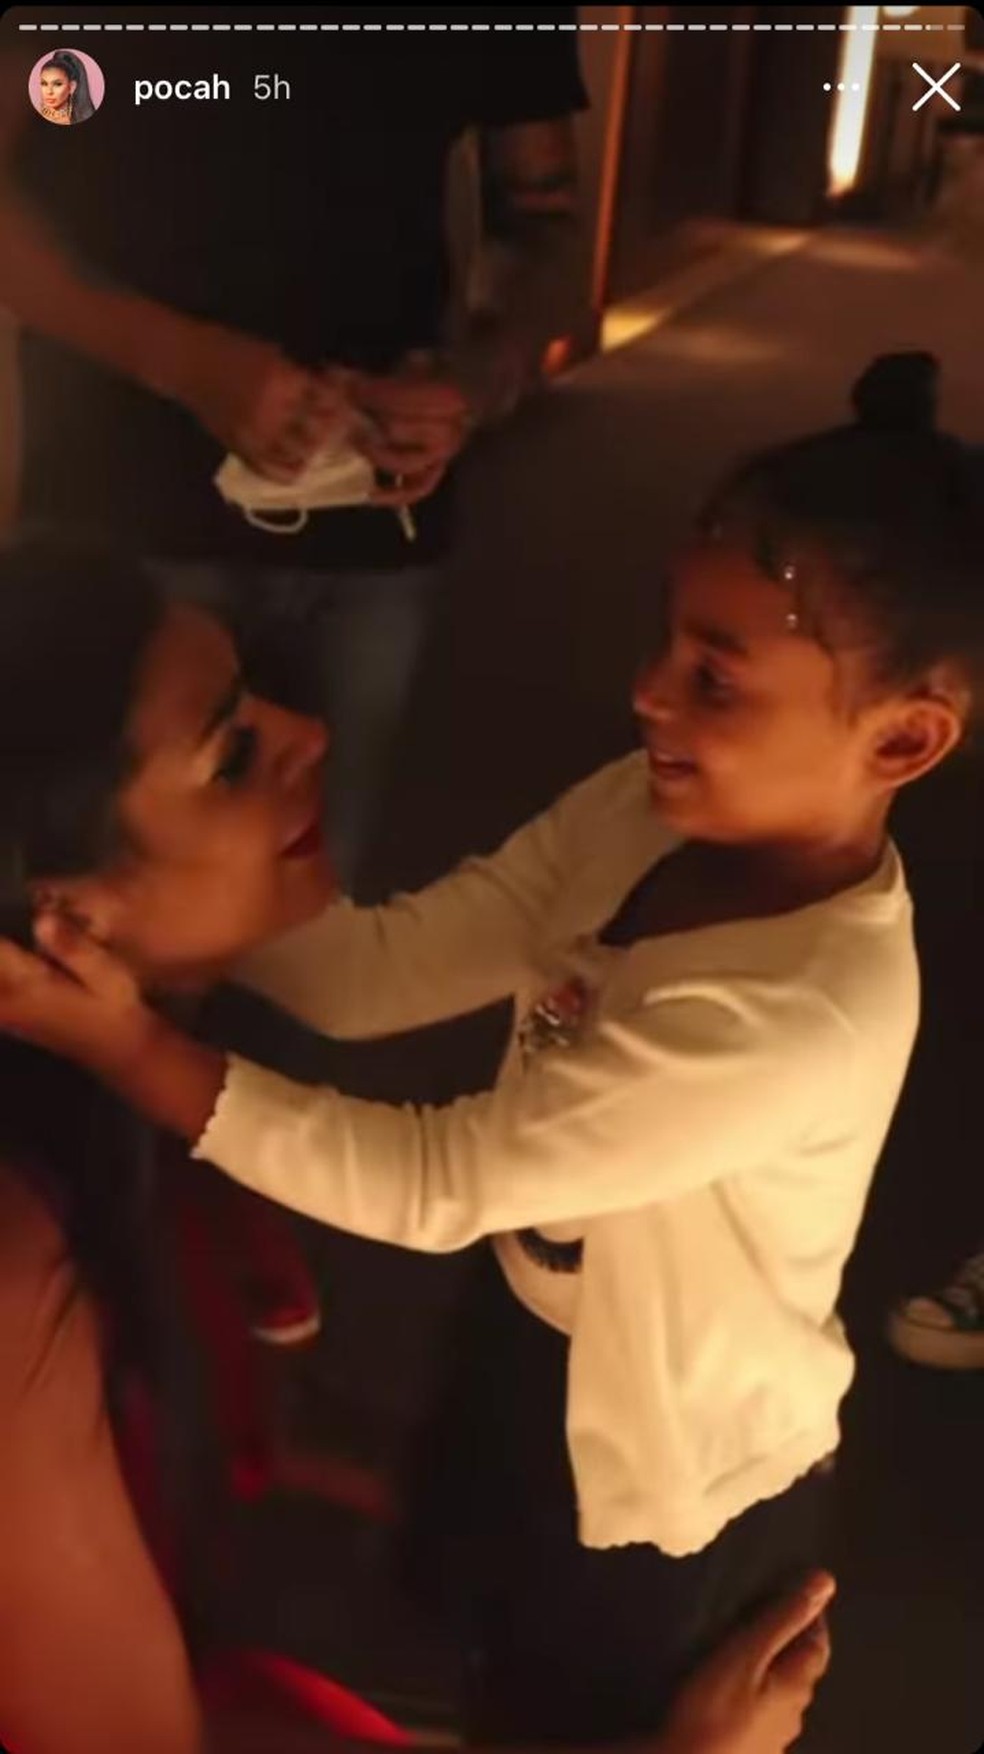 O emocionante reencontro de Pocah e da filha, Vitória — Foto: TV Globo